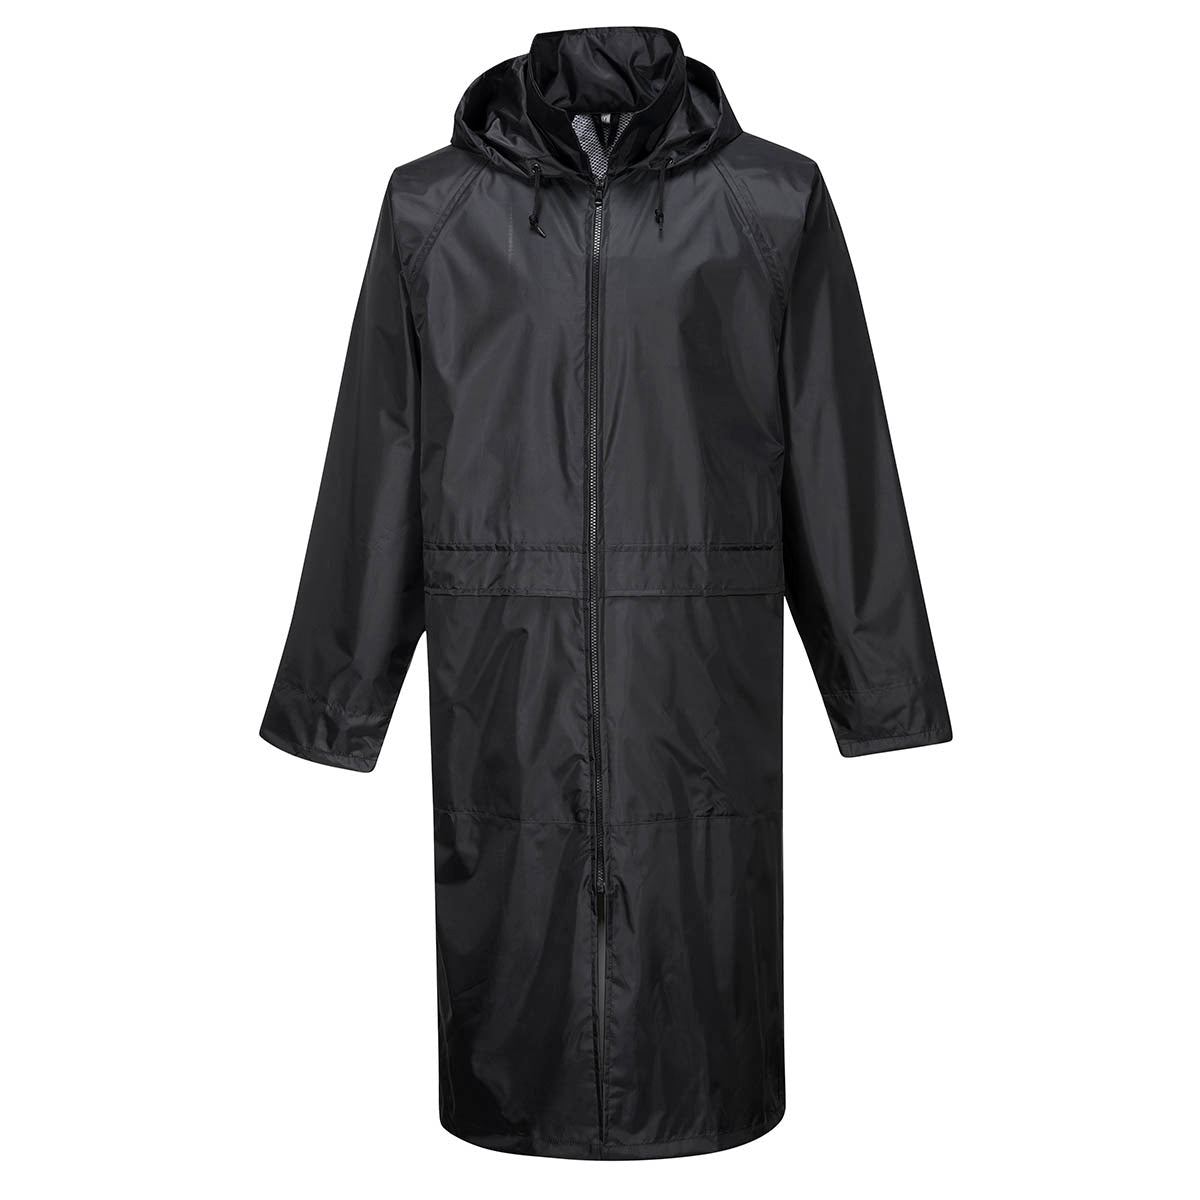 Portwest S438 Classic Rain Coat Black